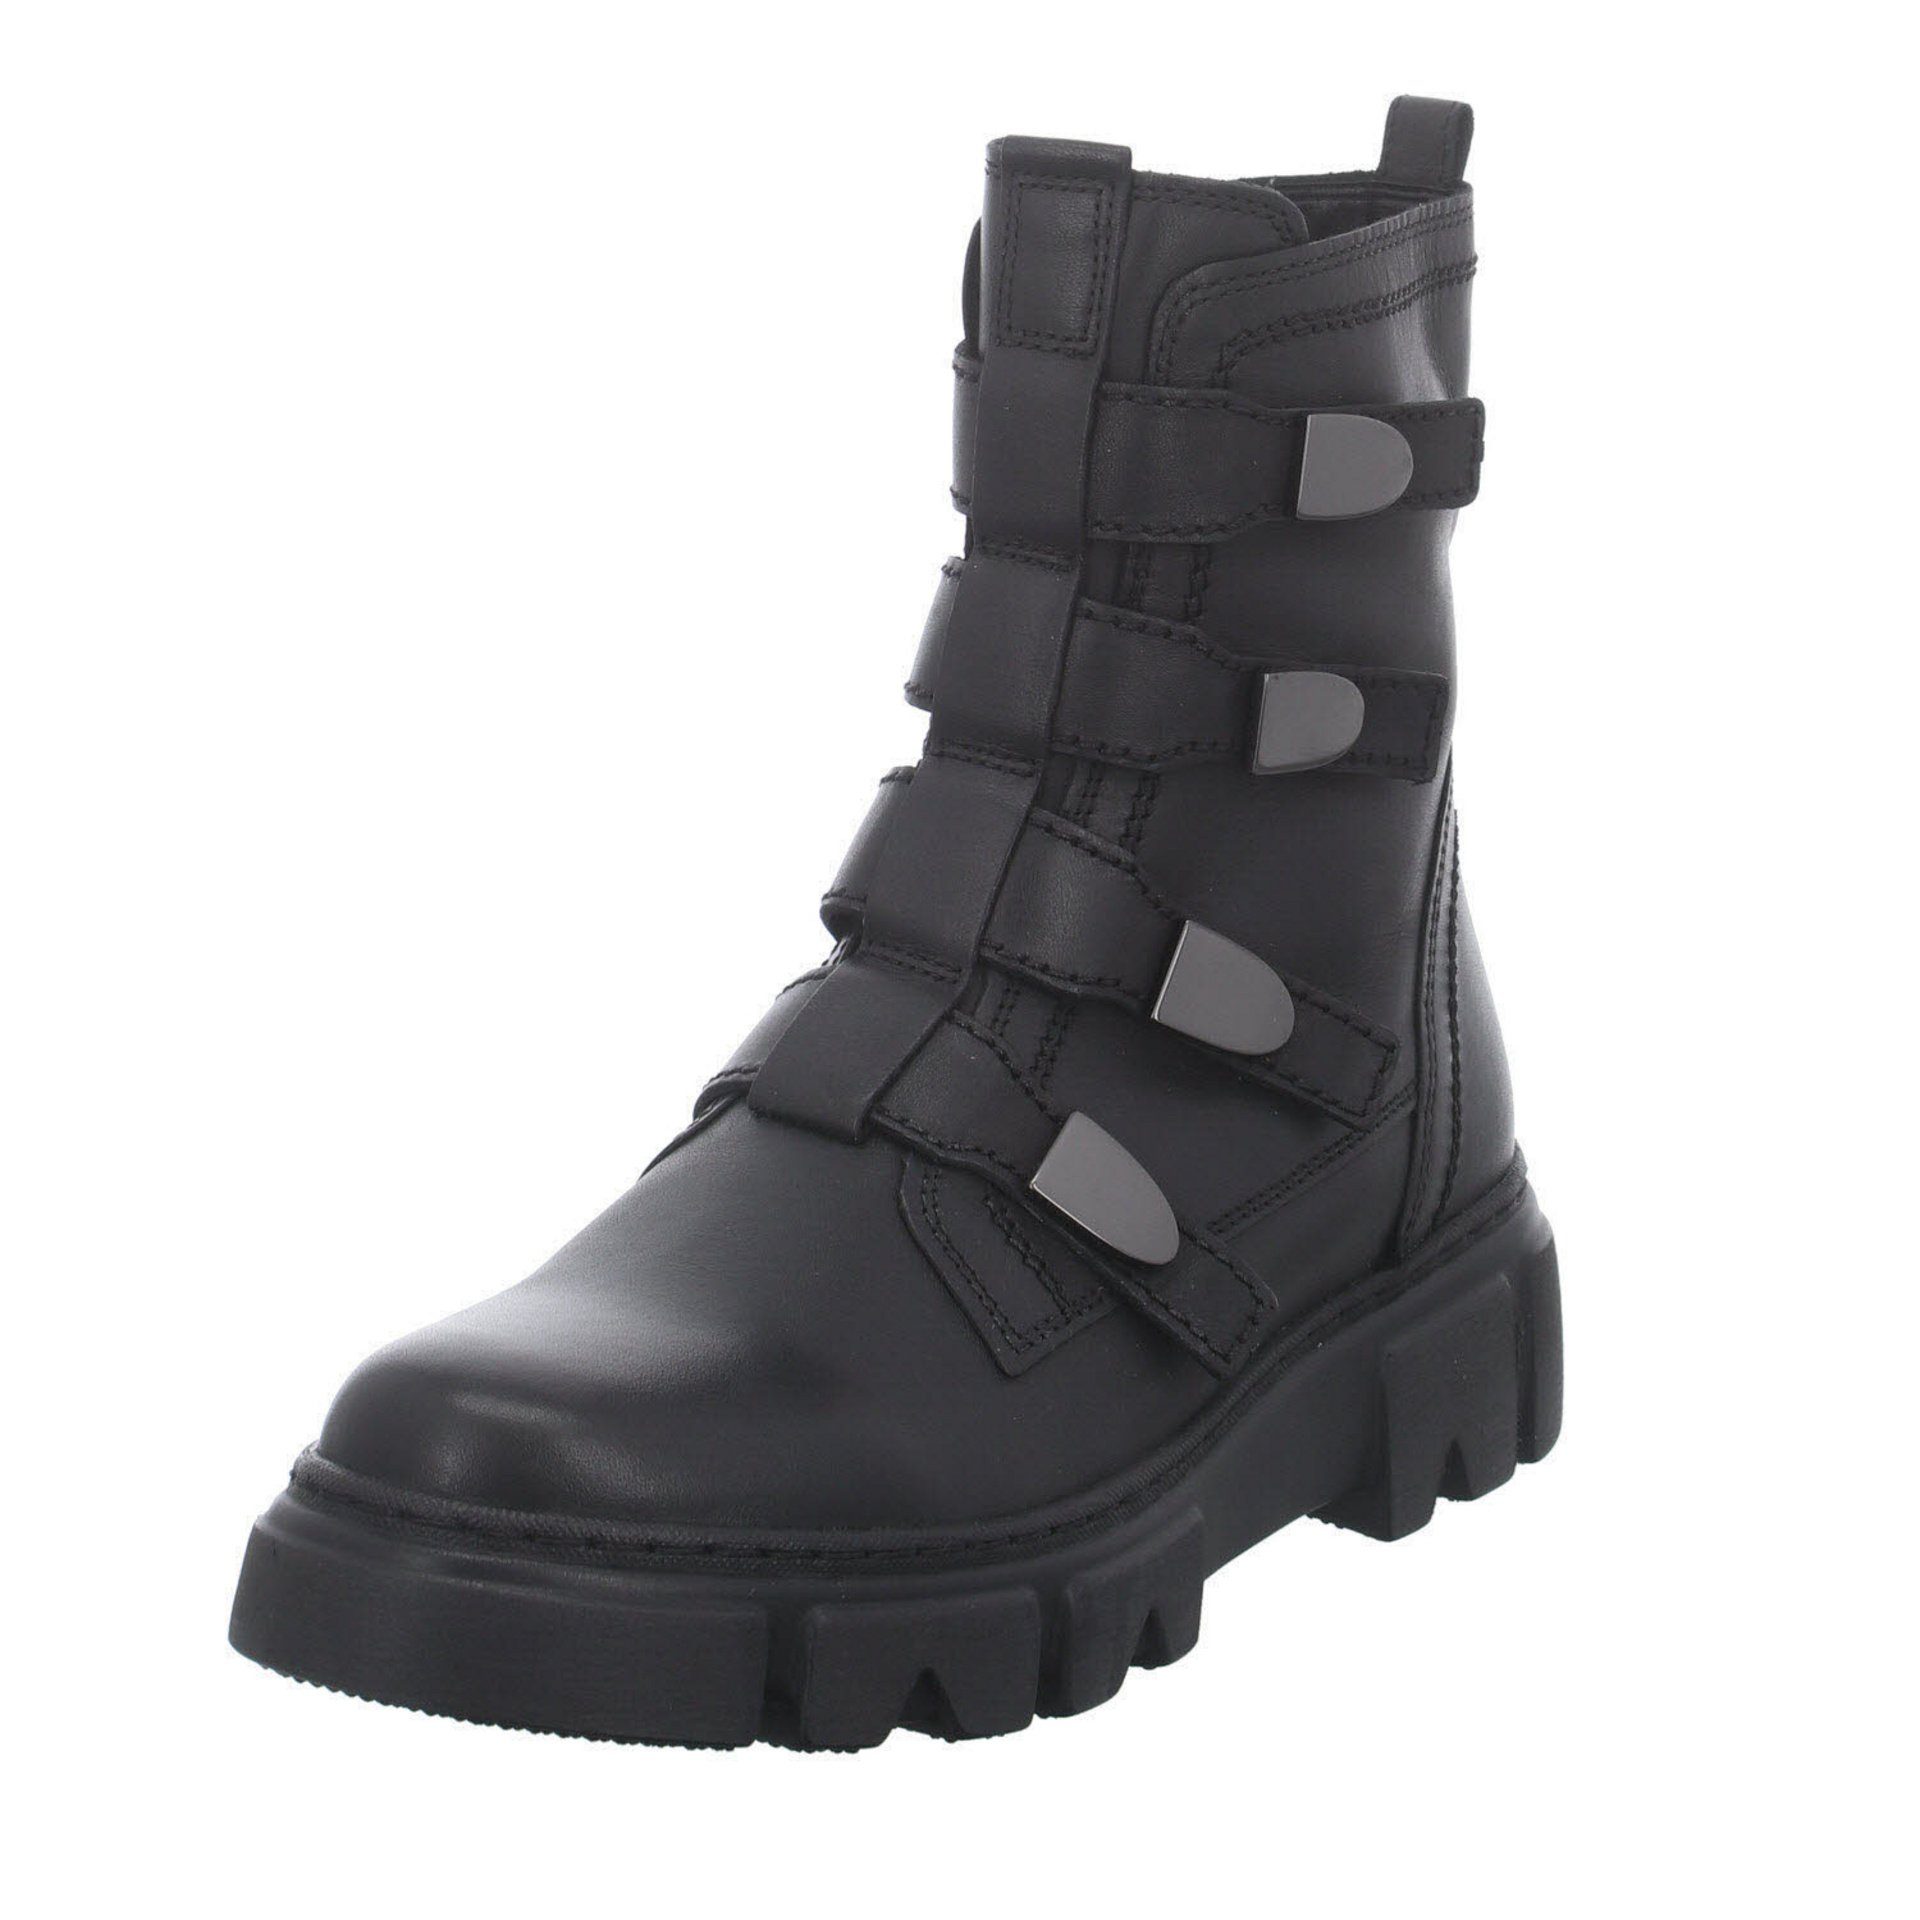 Gabor »Damen Stiefeletten Schuhe Boots Elegant Freizeit« Stiefelette  Glattleder online kaufen | OTTO